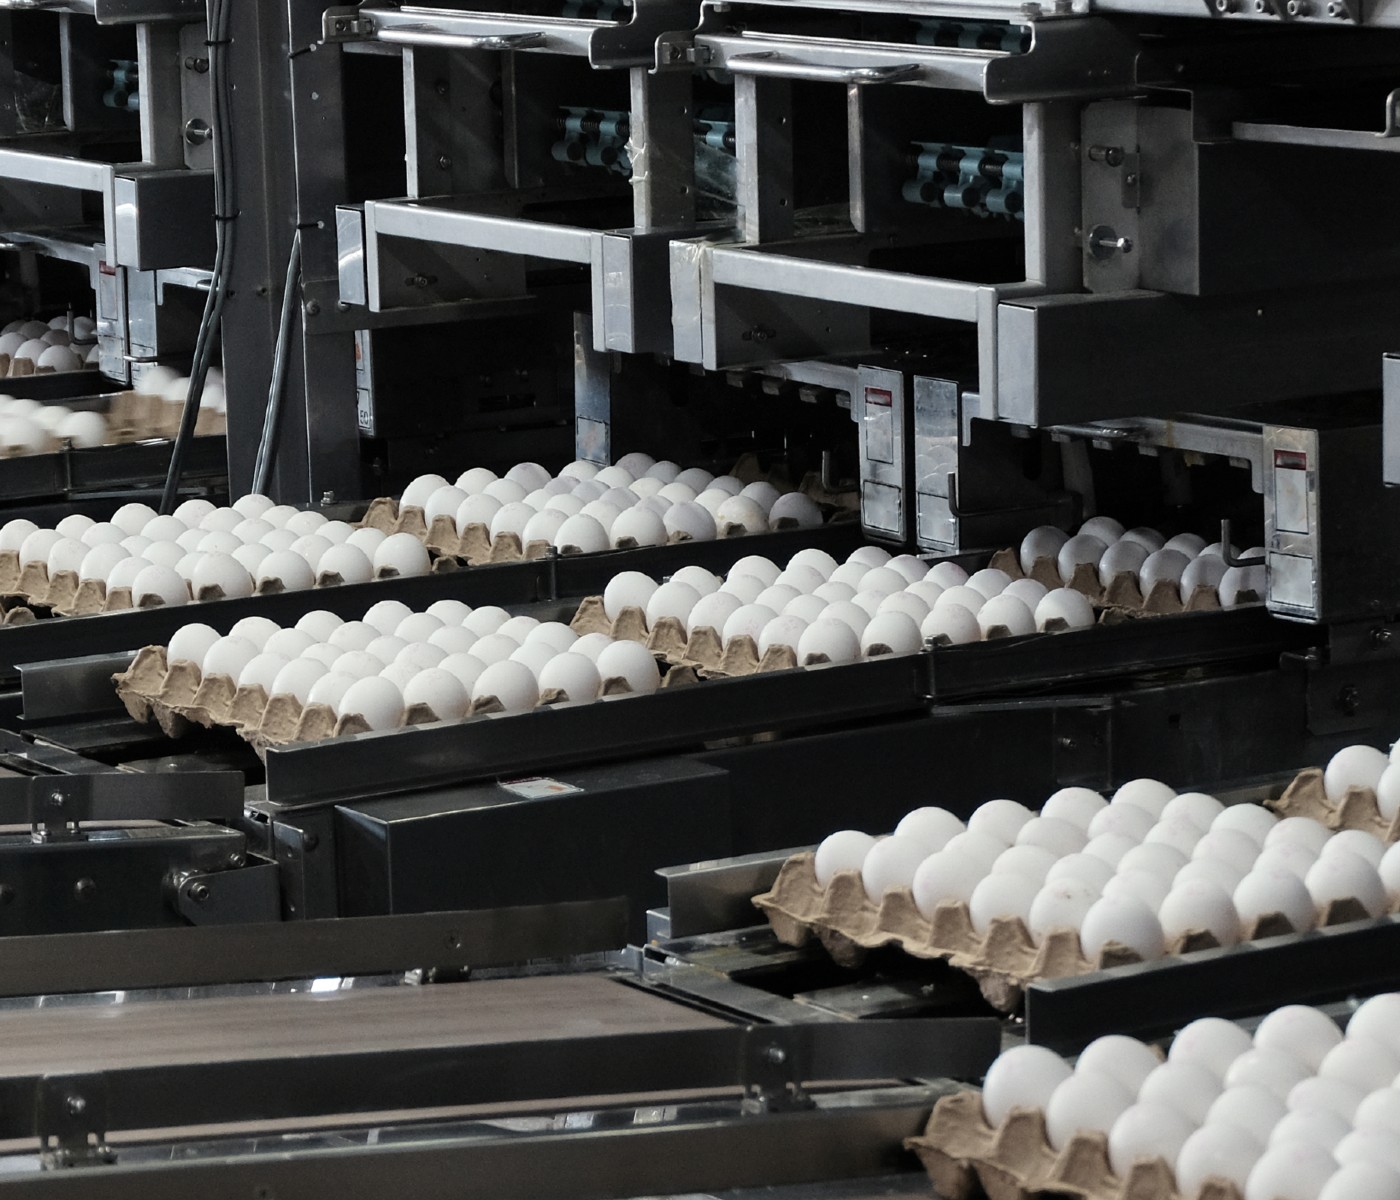 Industria del huevo en Chile: ¡Continúa avanzando prácticas productivas más sostenibles!